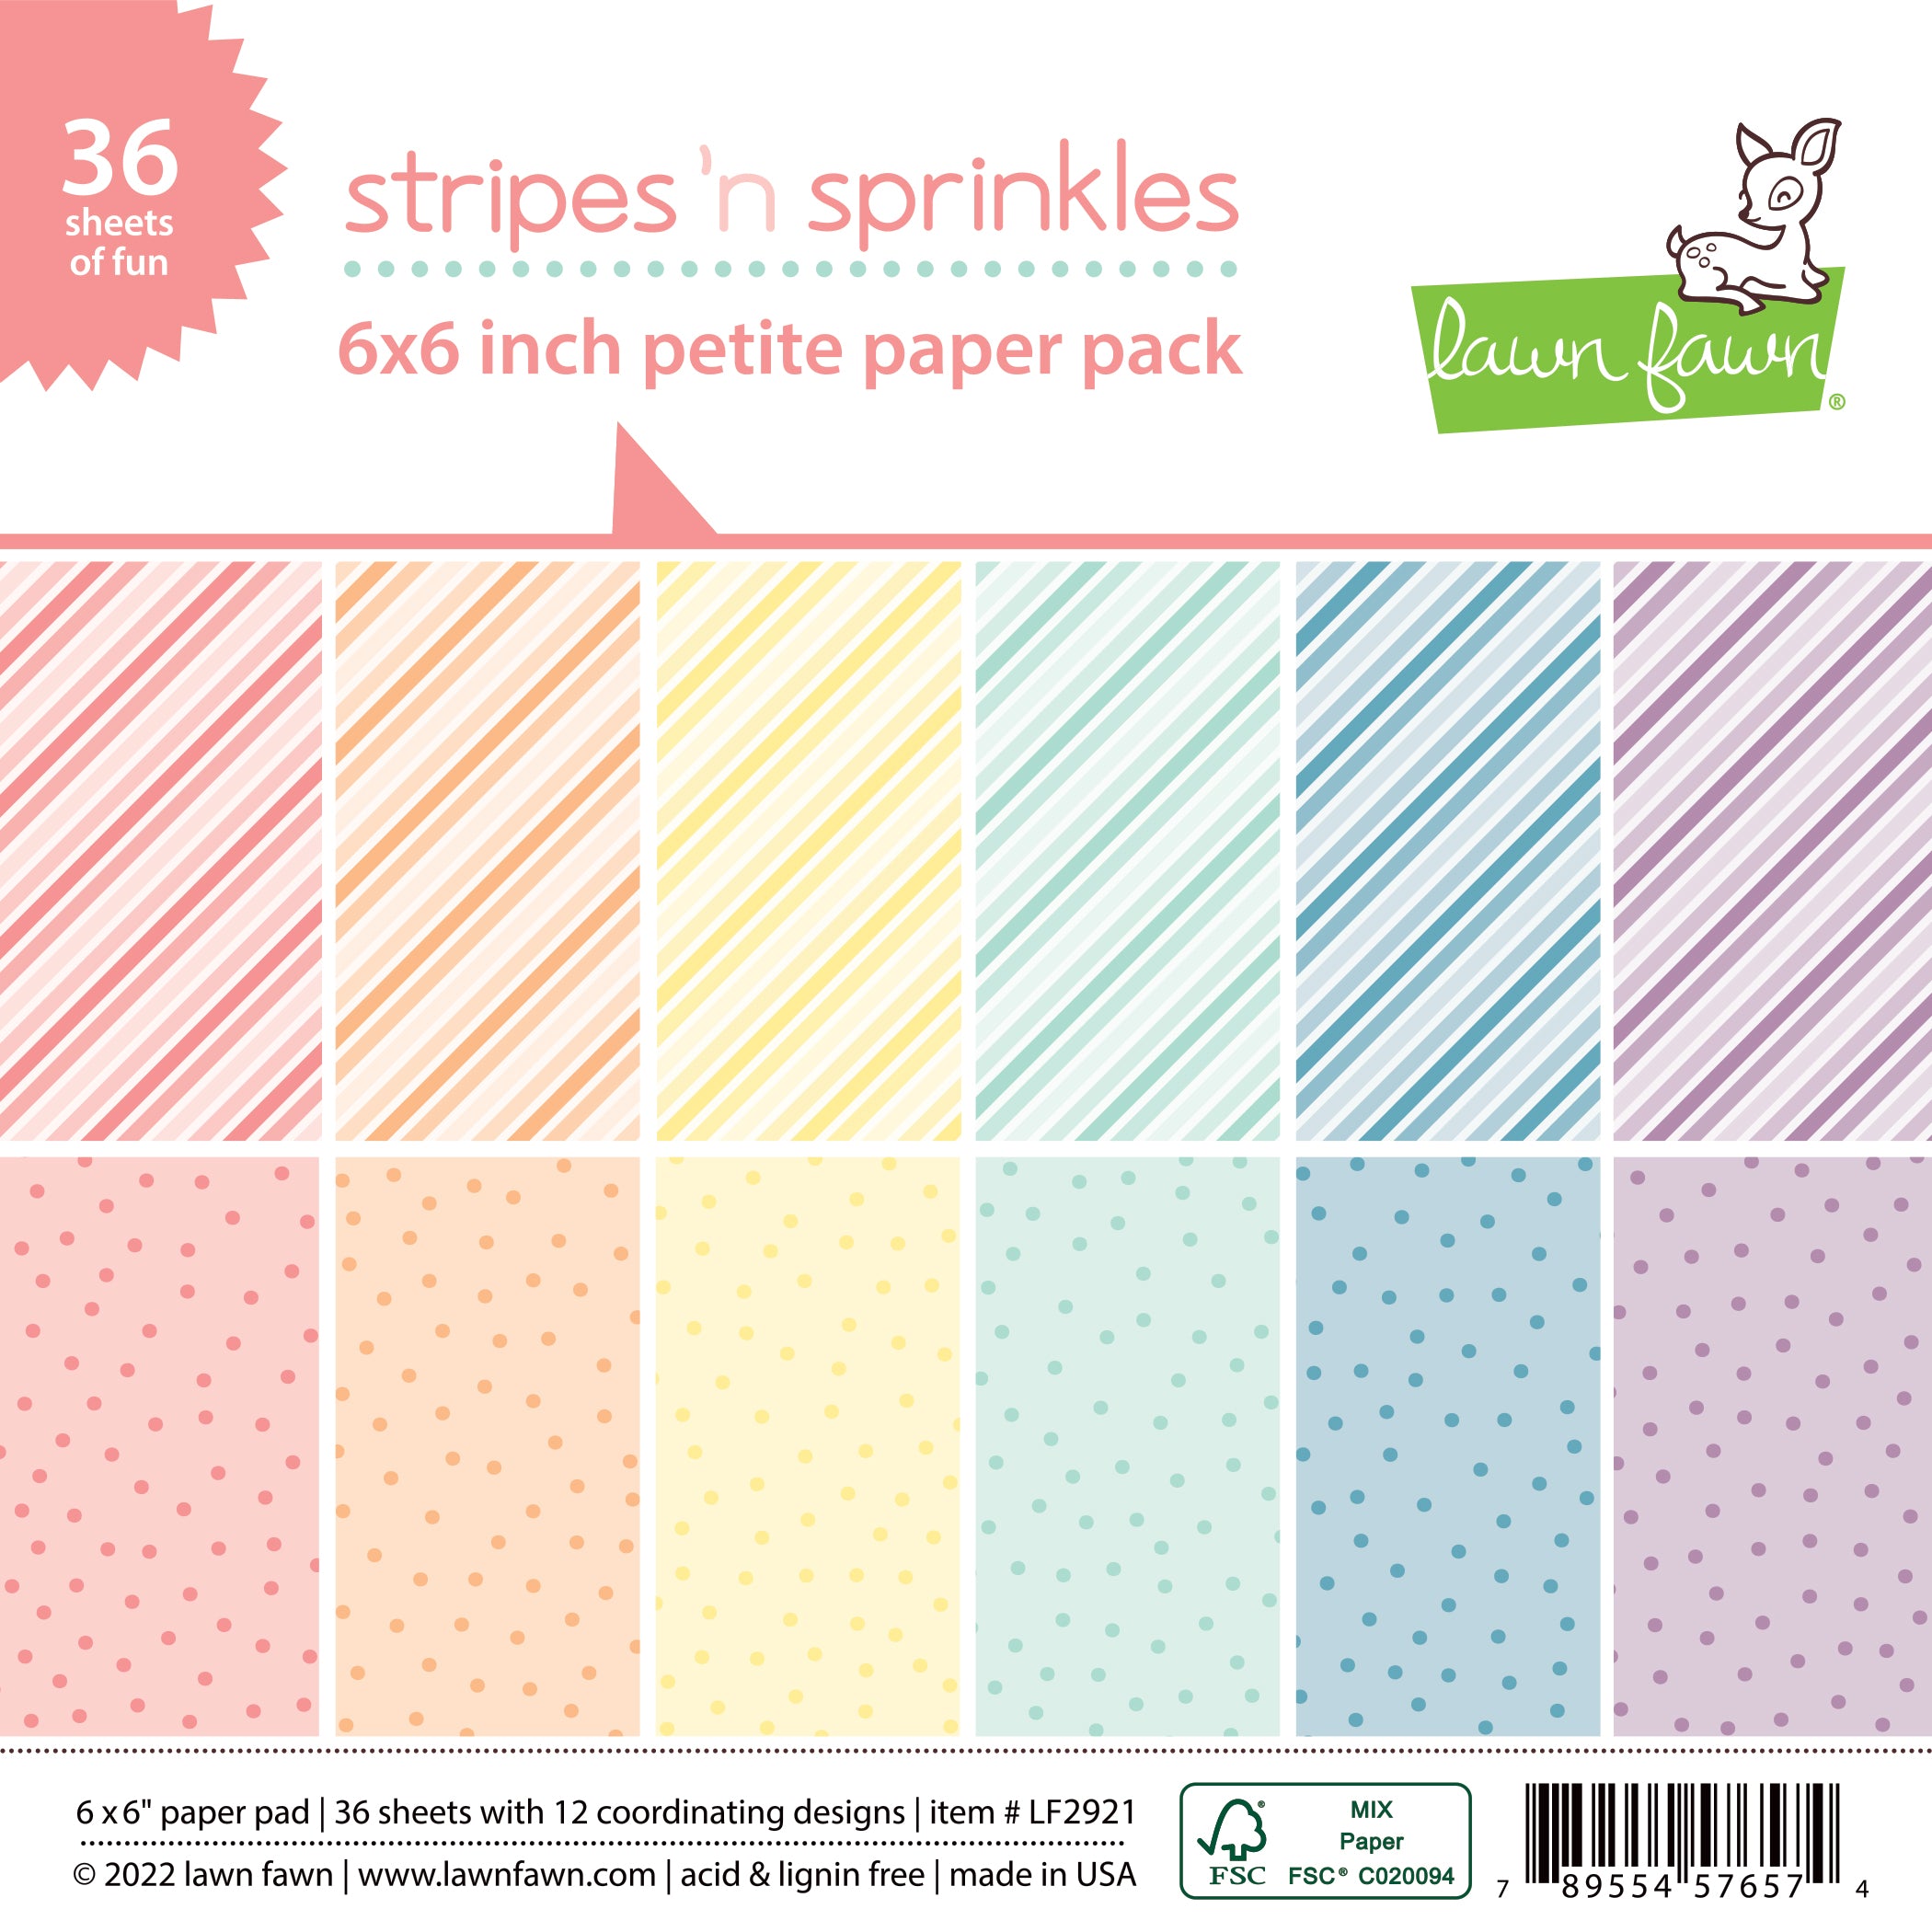 stripes 'n sprinkles petite paper pack